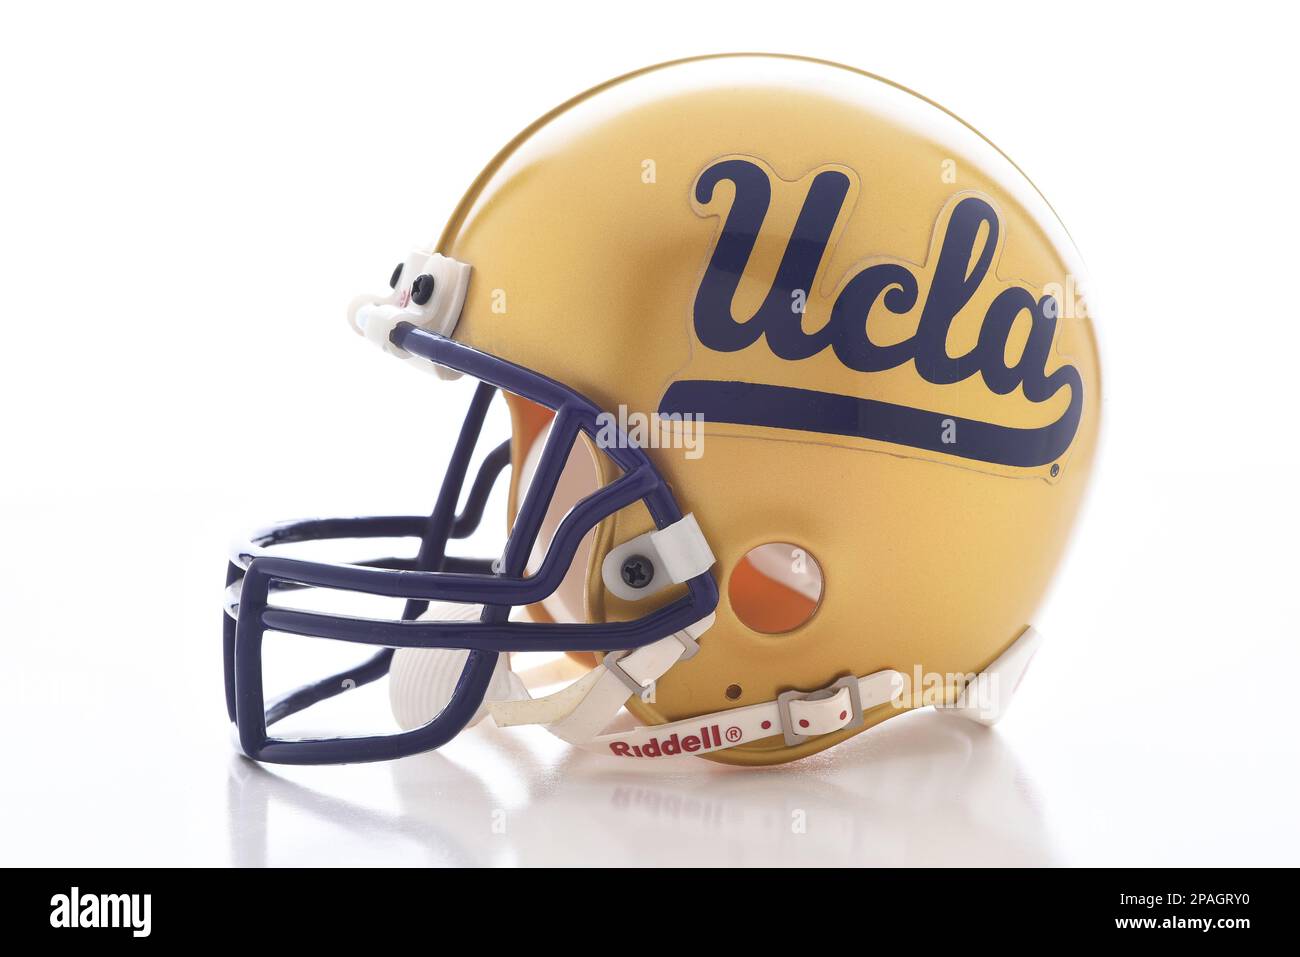 IRVINE, KALIFORNIEN - 11. MÄRZ 2023: Ein Mini-Fußball-Helm zum Sammeln von der University of California Los Angeles, UCLA. Stockfoto